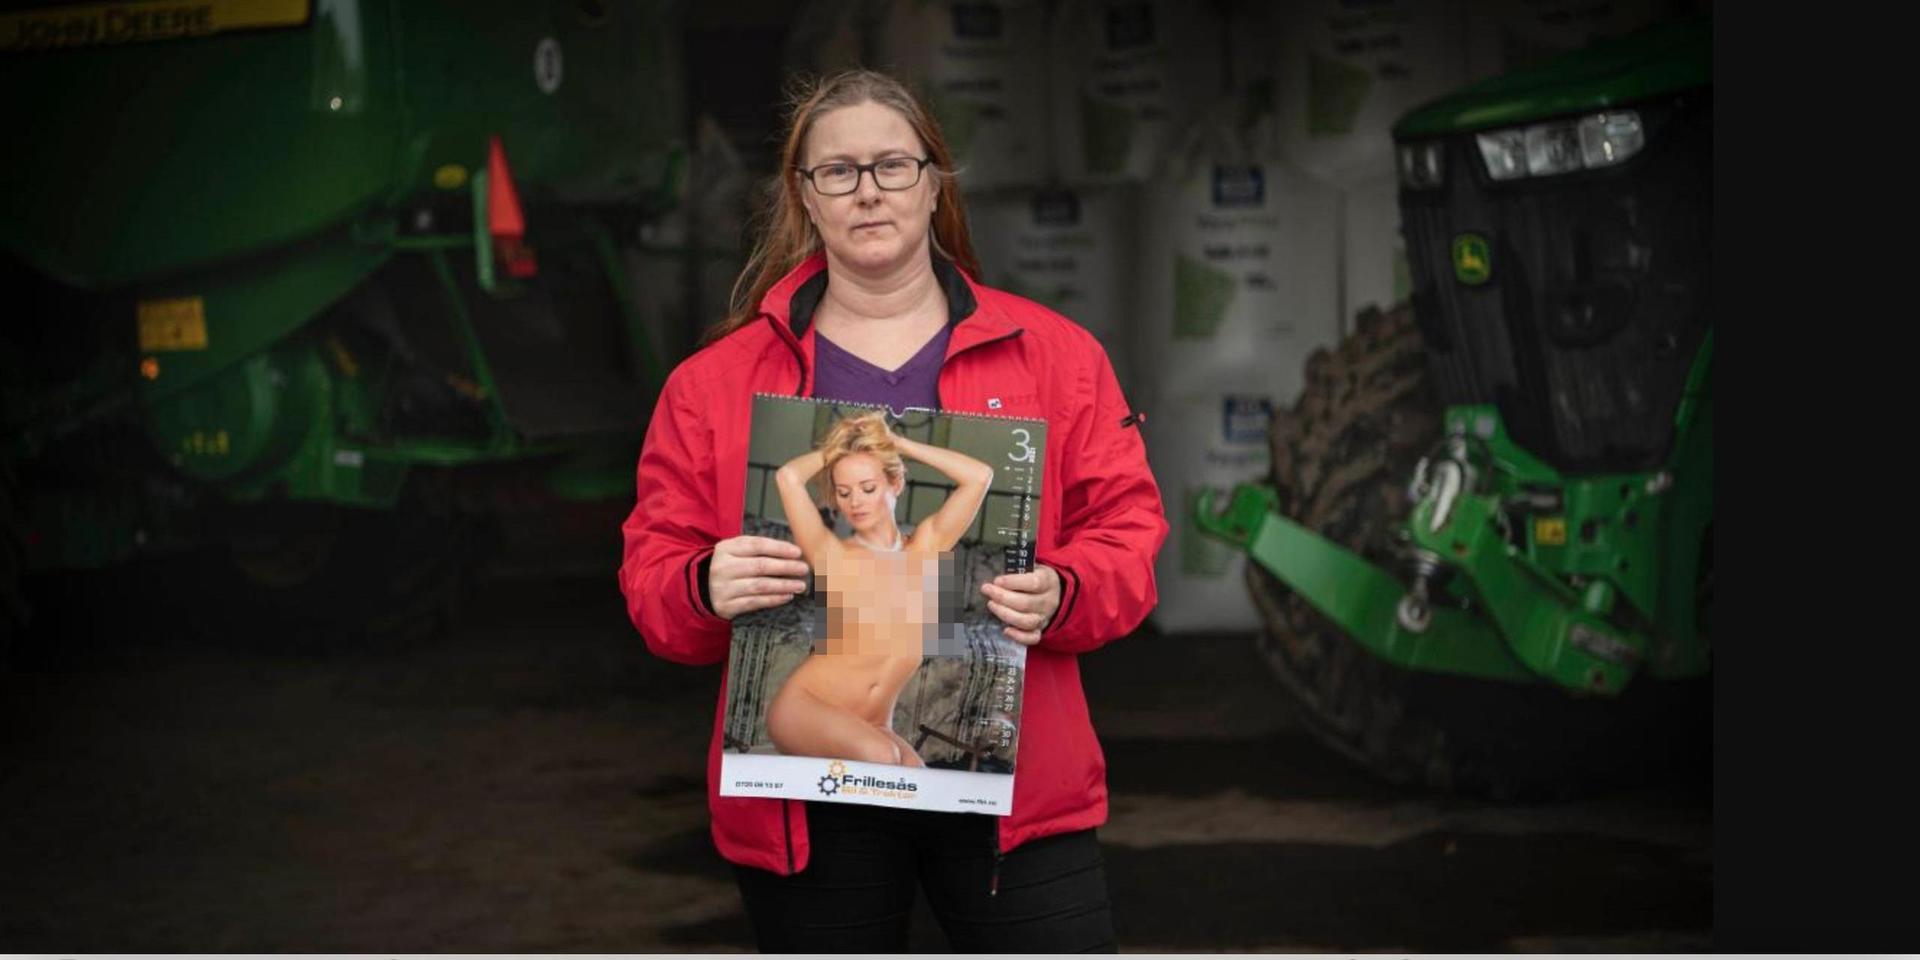 Lantbrukaren Helen Johansson och hennes familj fick en kalender med nakna kvinnor från grävmaskinföretaget i Frillesås. ”Den är kränkande både för mig och för alla kvinnor”, anser hon.